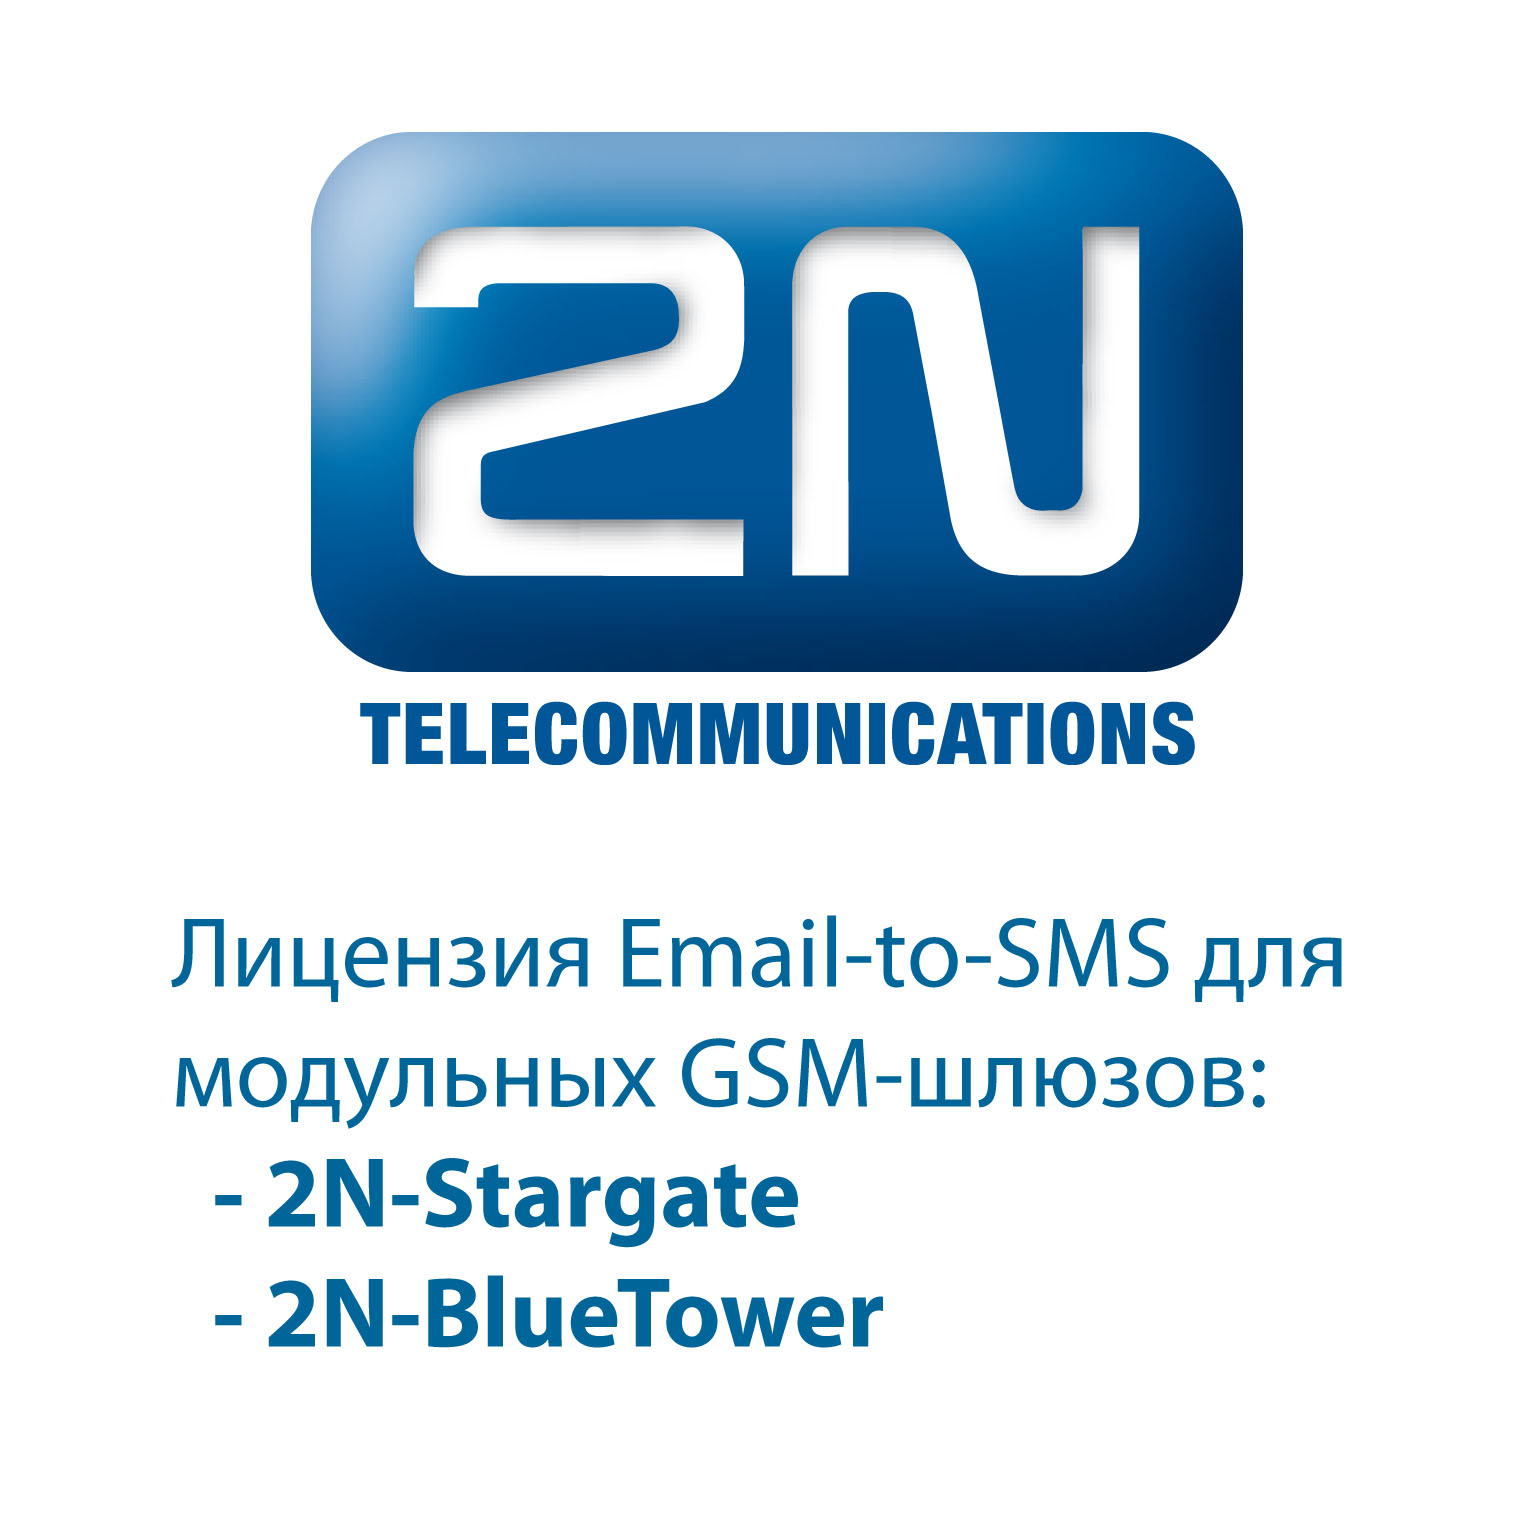 2N-5070910E - лицензия для 2N StarGate email SMS server (лицензия для 10 пользователей)